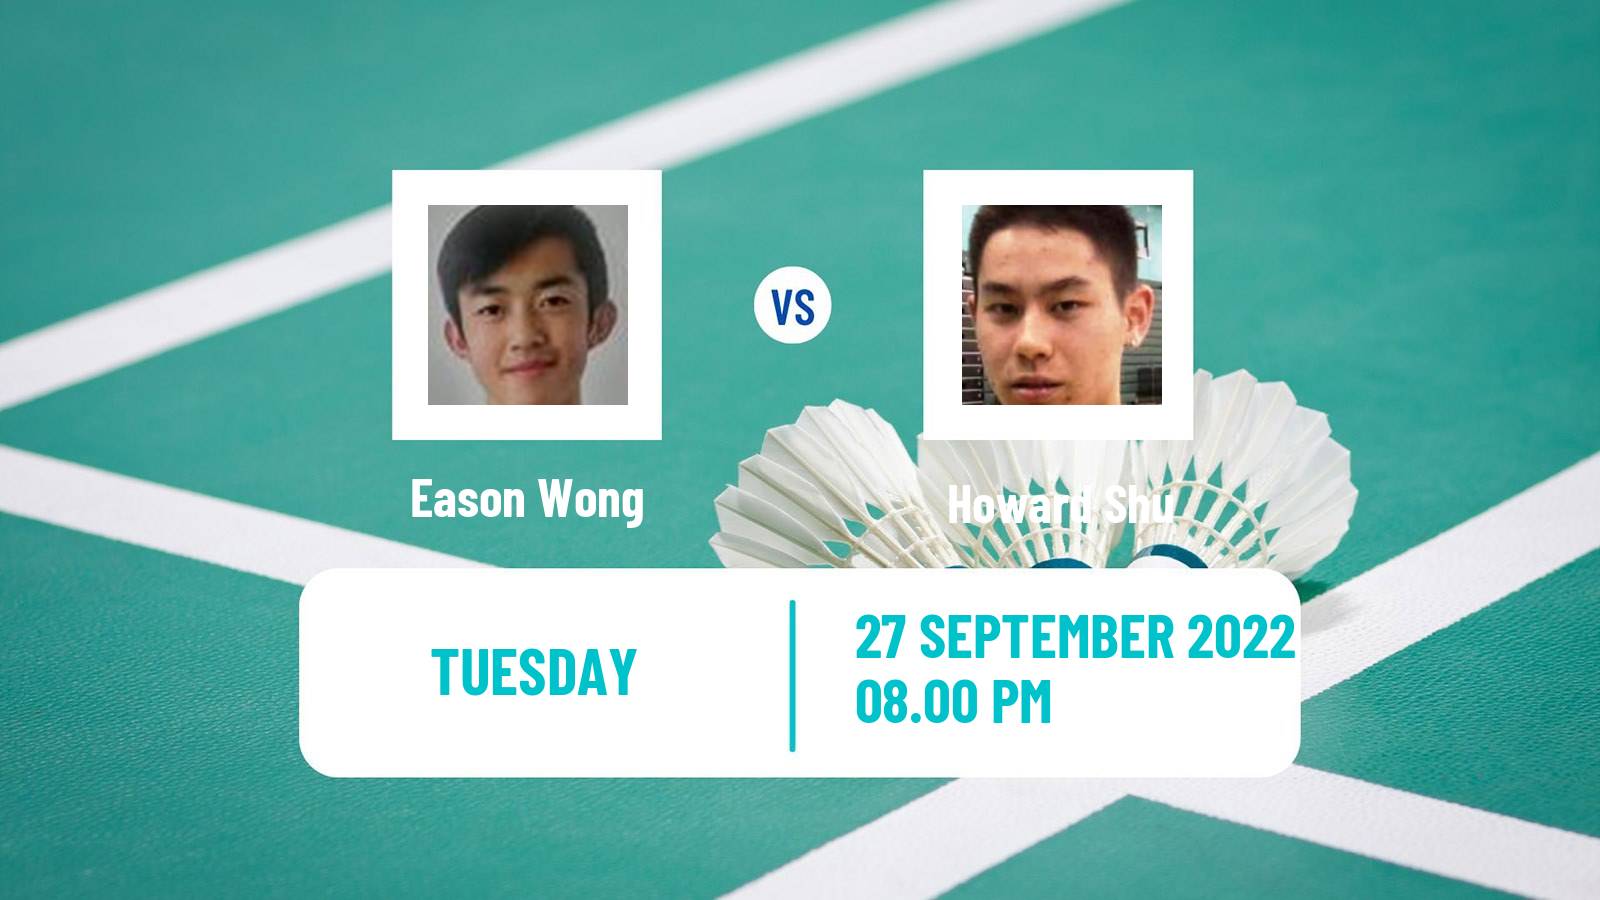 Badminton Badminton Eason Wong - Howard Shu